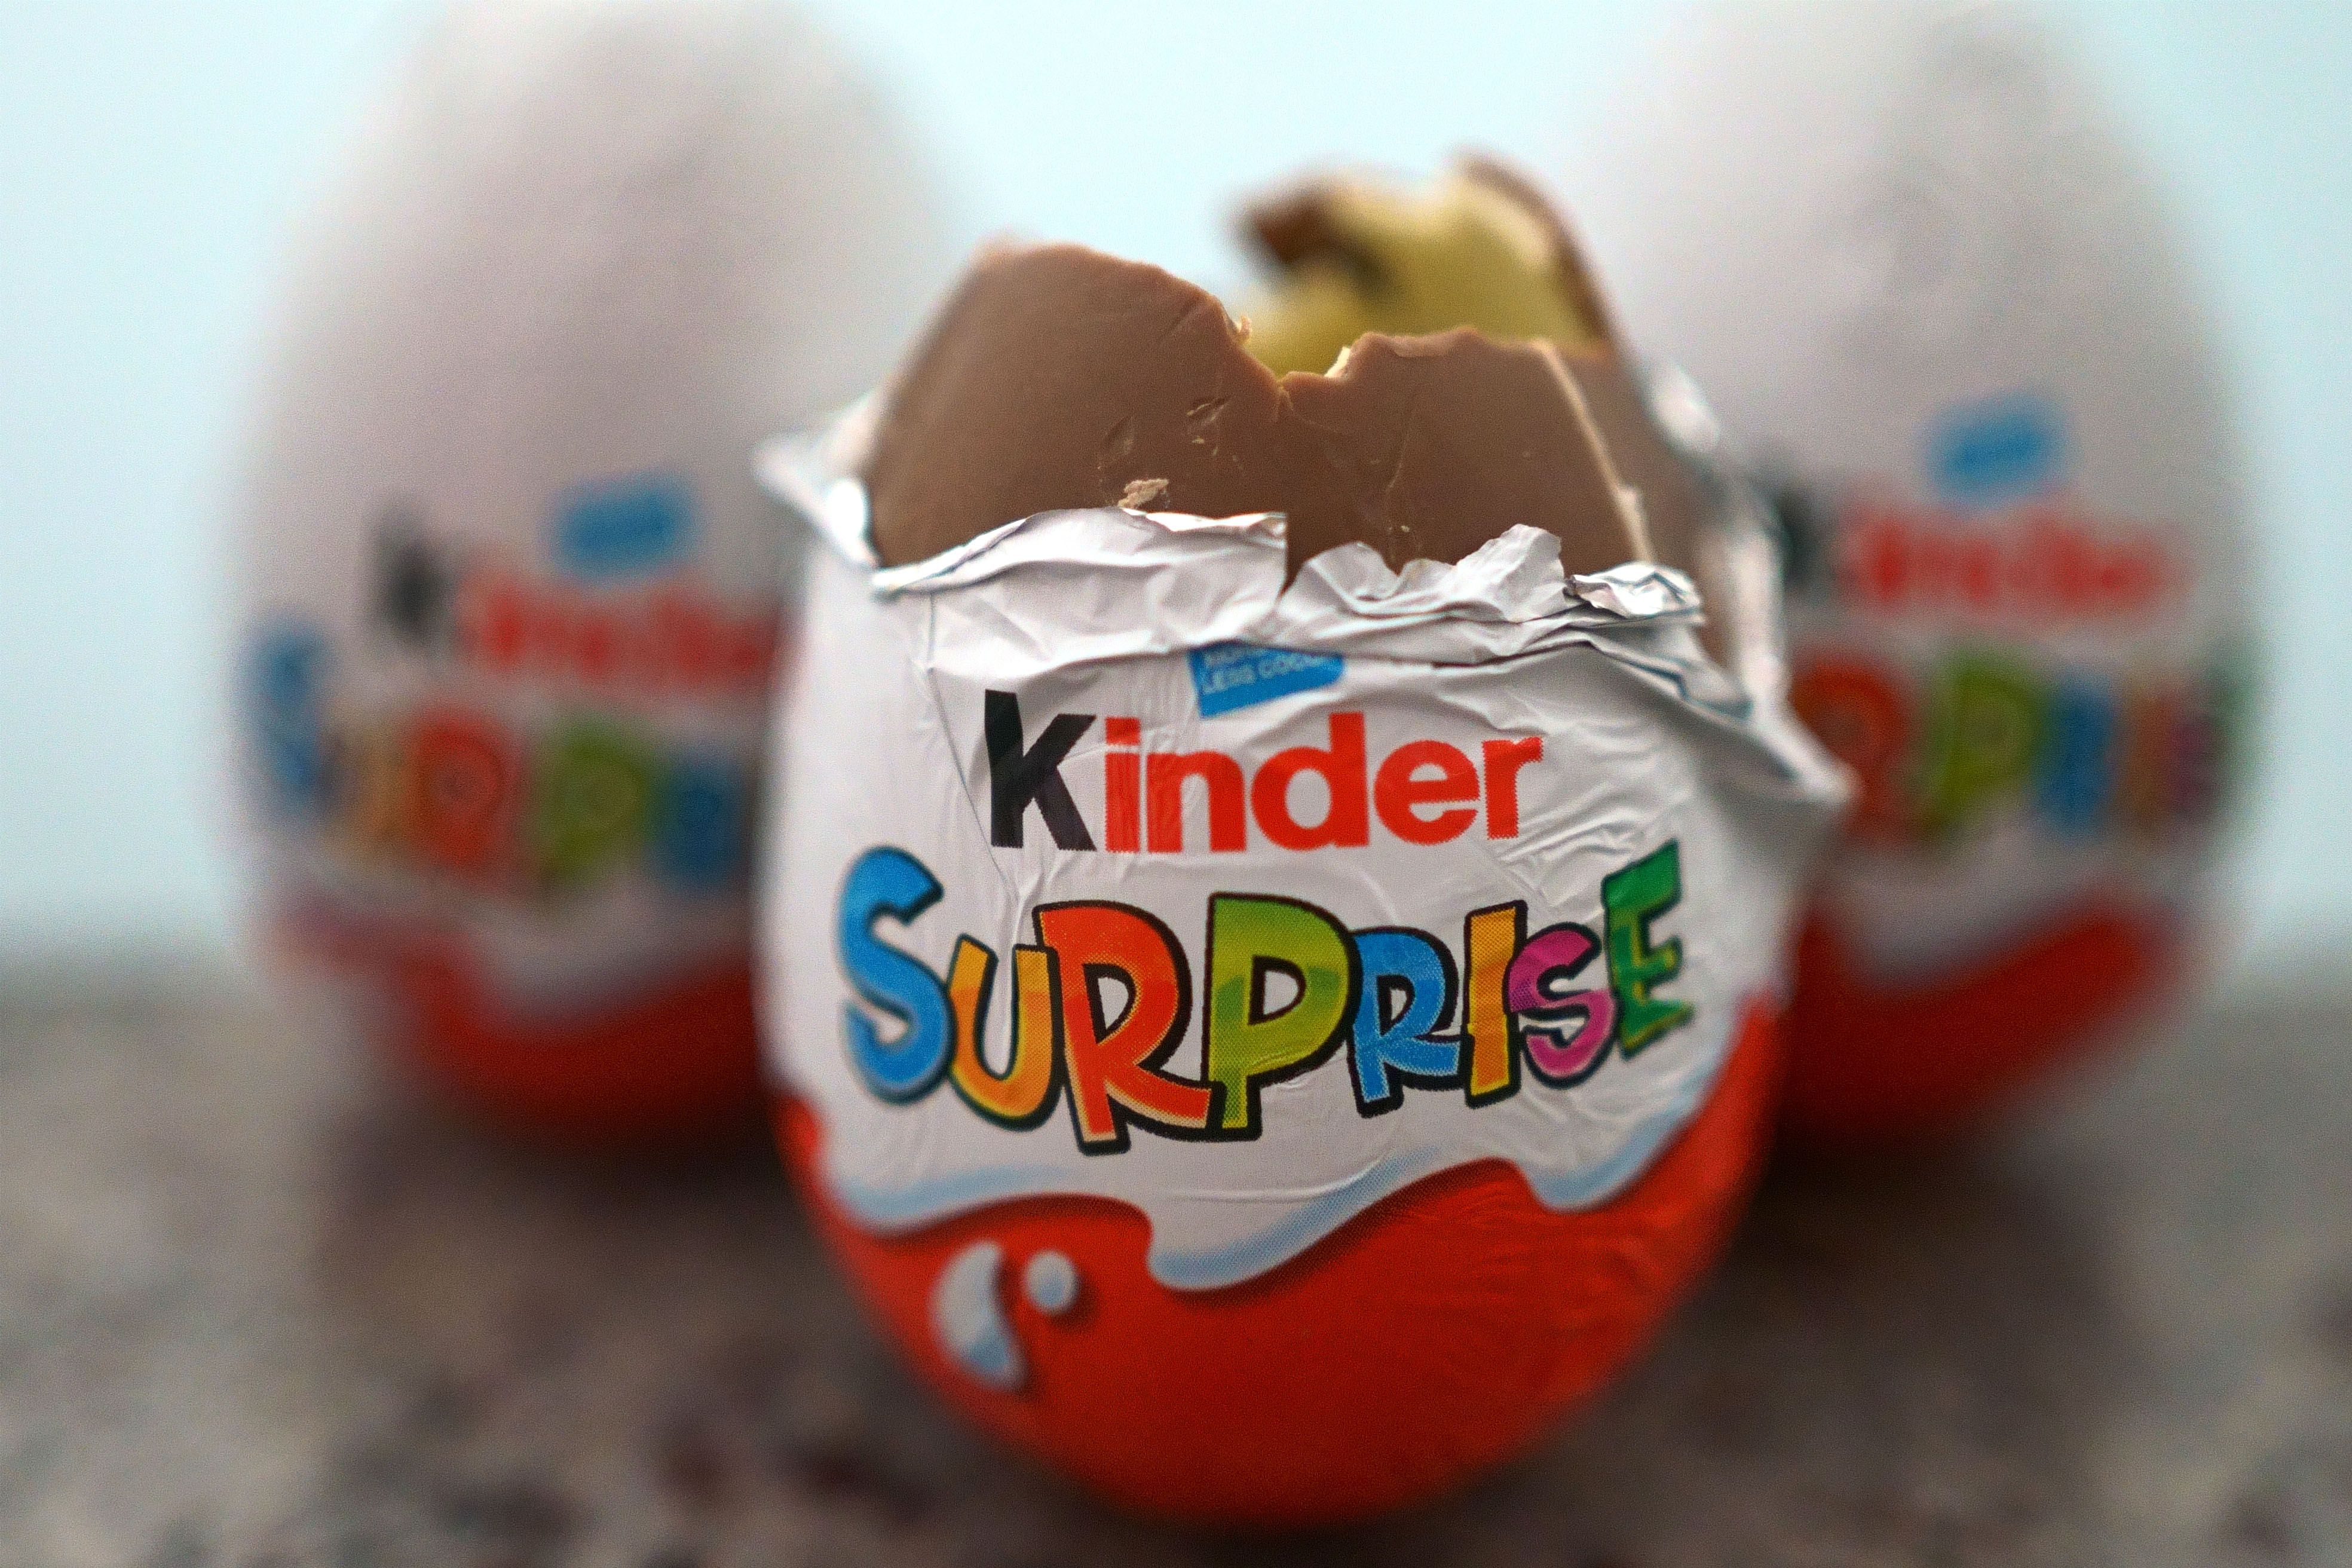 Kinder Sürpriz'i üreten çikolata fabrikası kapatıldı